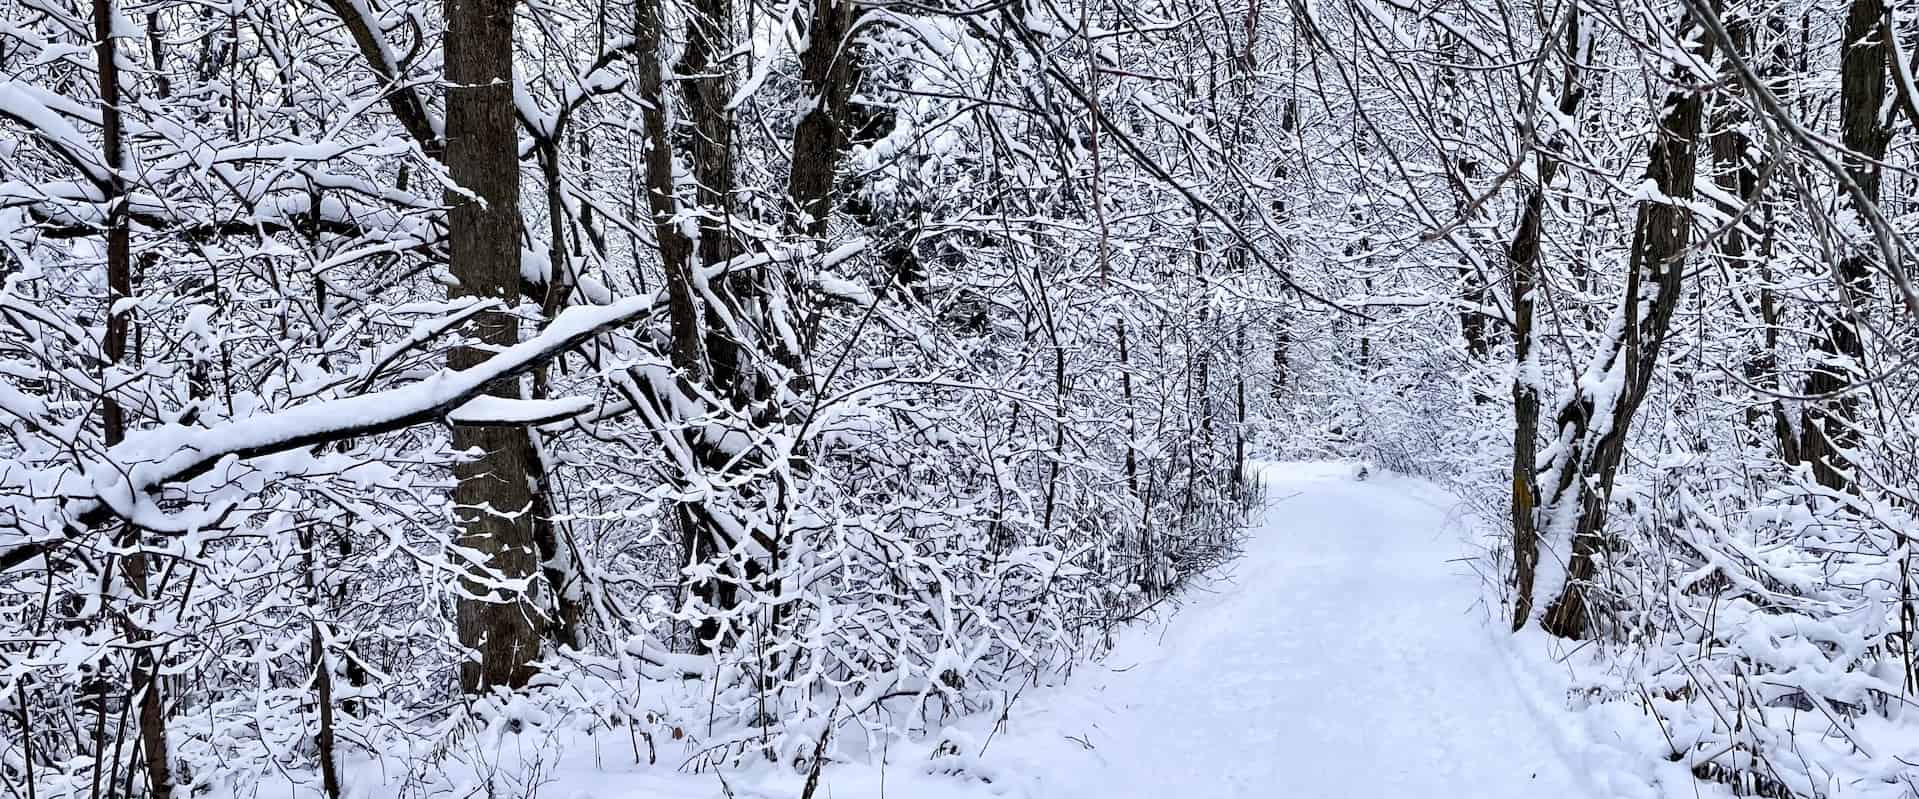 Sentier enneigé dans un boisé avec arbres couverts de neige.